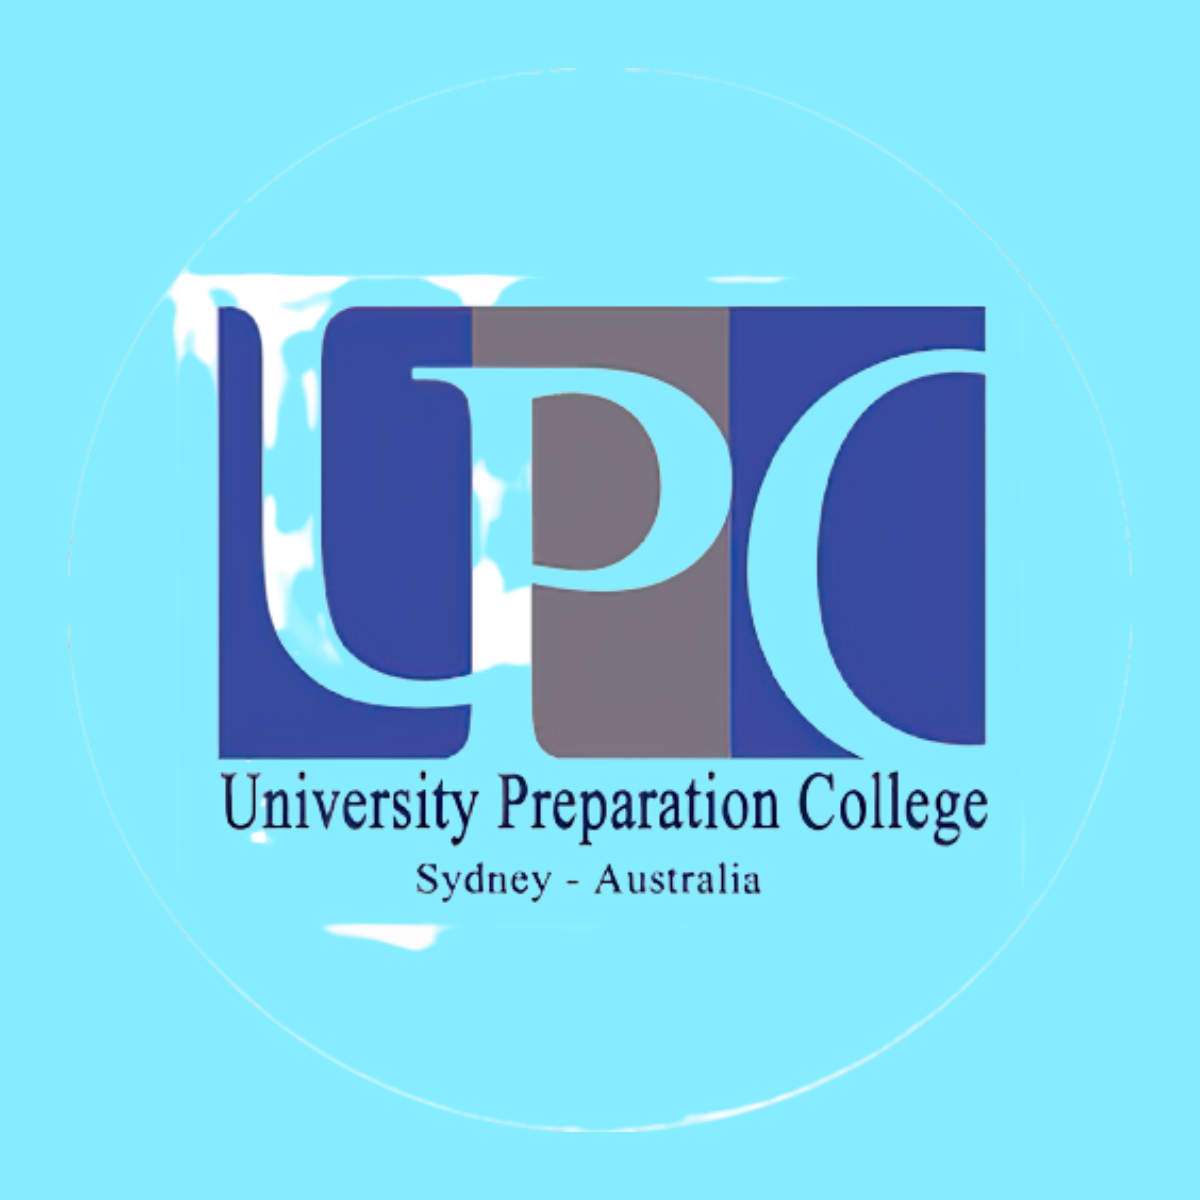 UPC Sydney - Australia